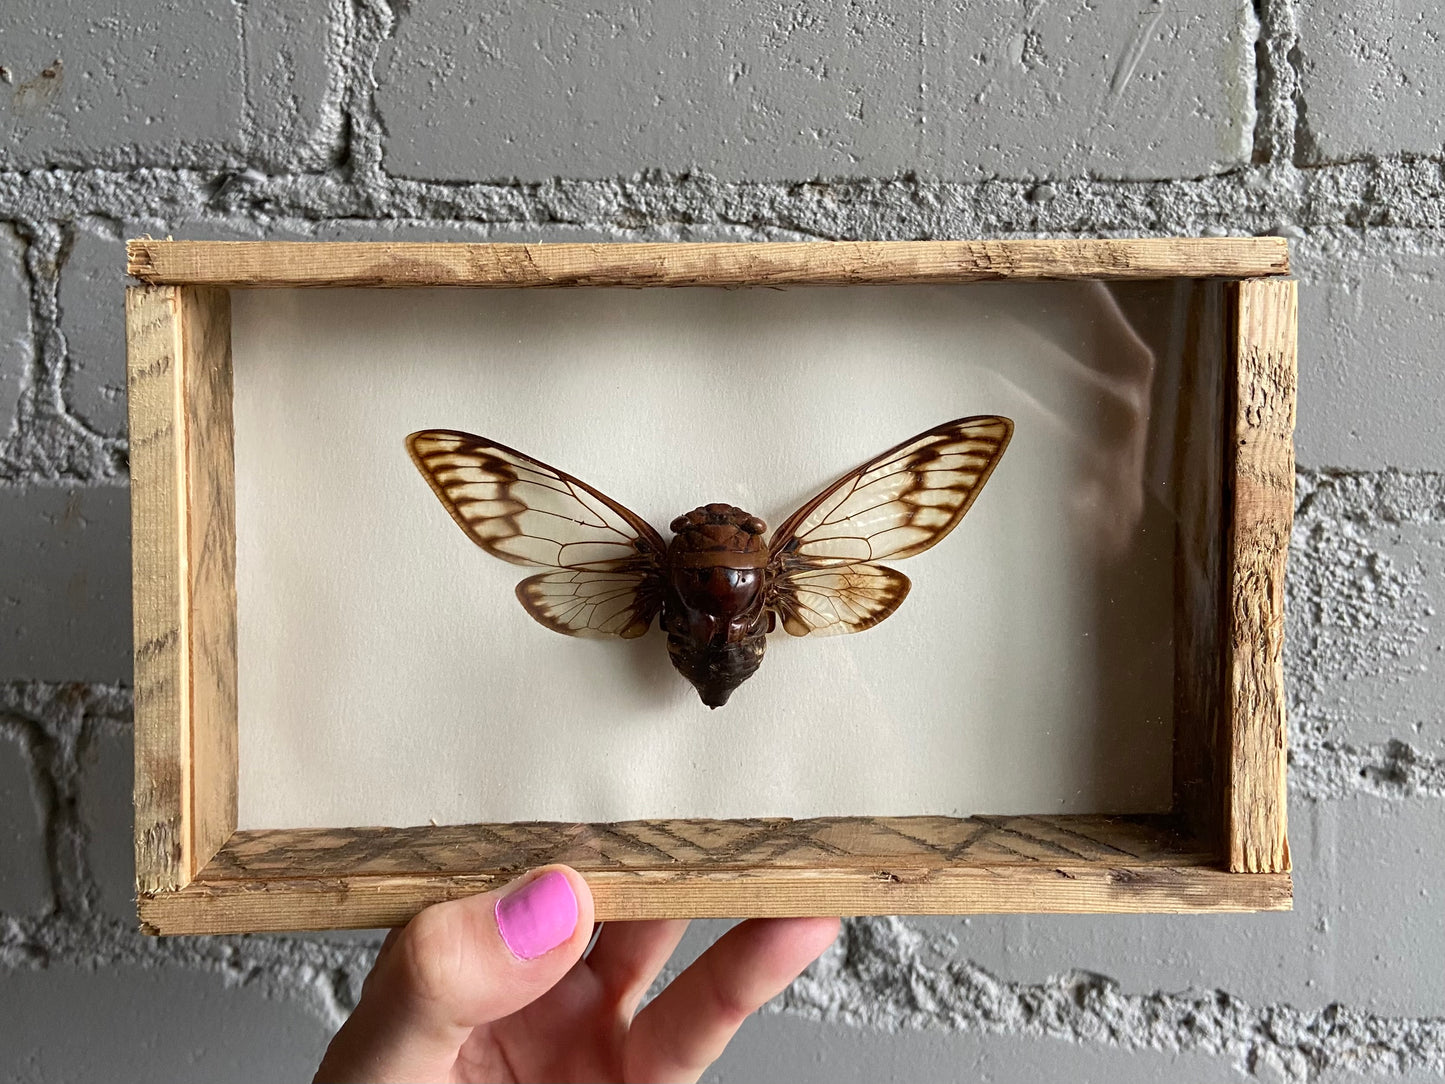 Framed Cicada